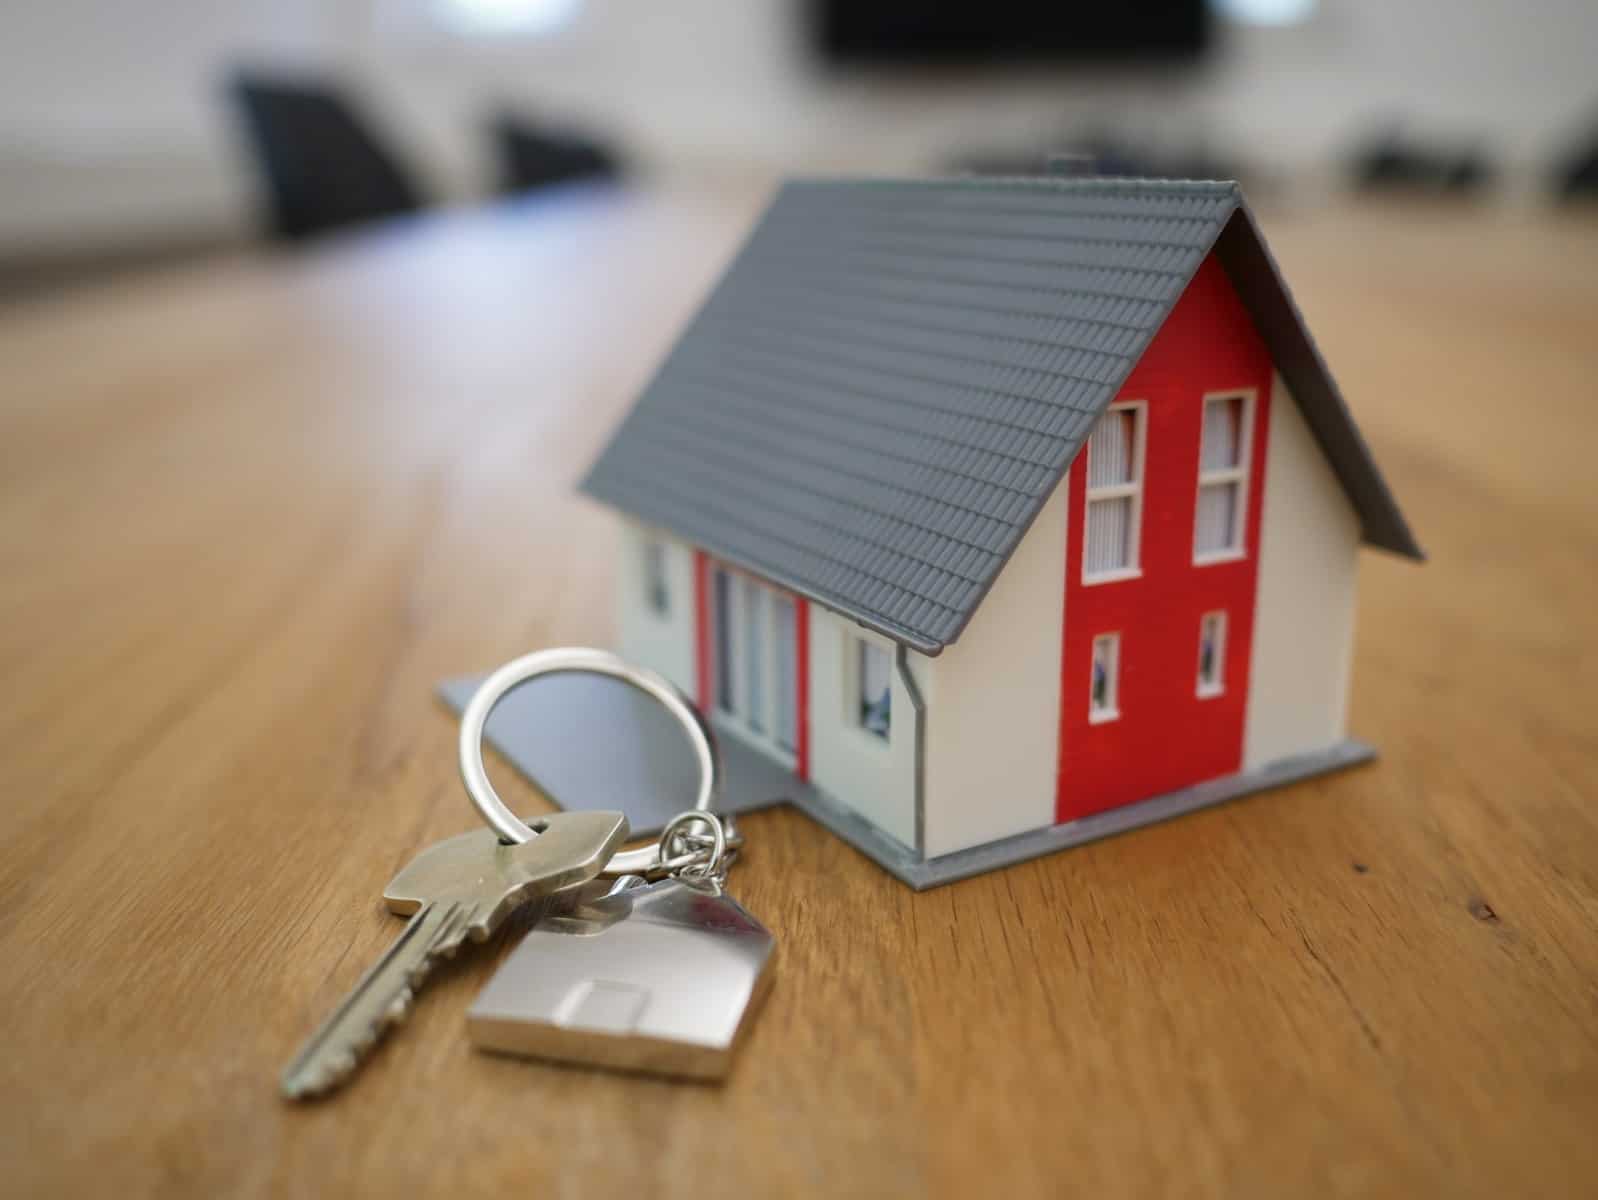 מיניאטורה של בית עץ לבן ואדום על שולחן חום כאשר מפתחות לבית לצידו